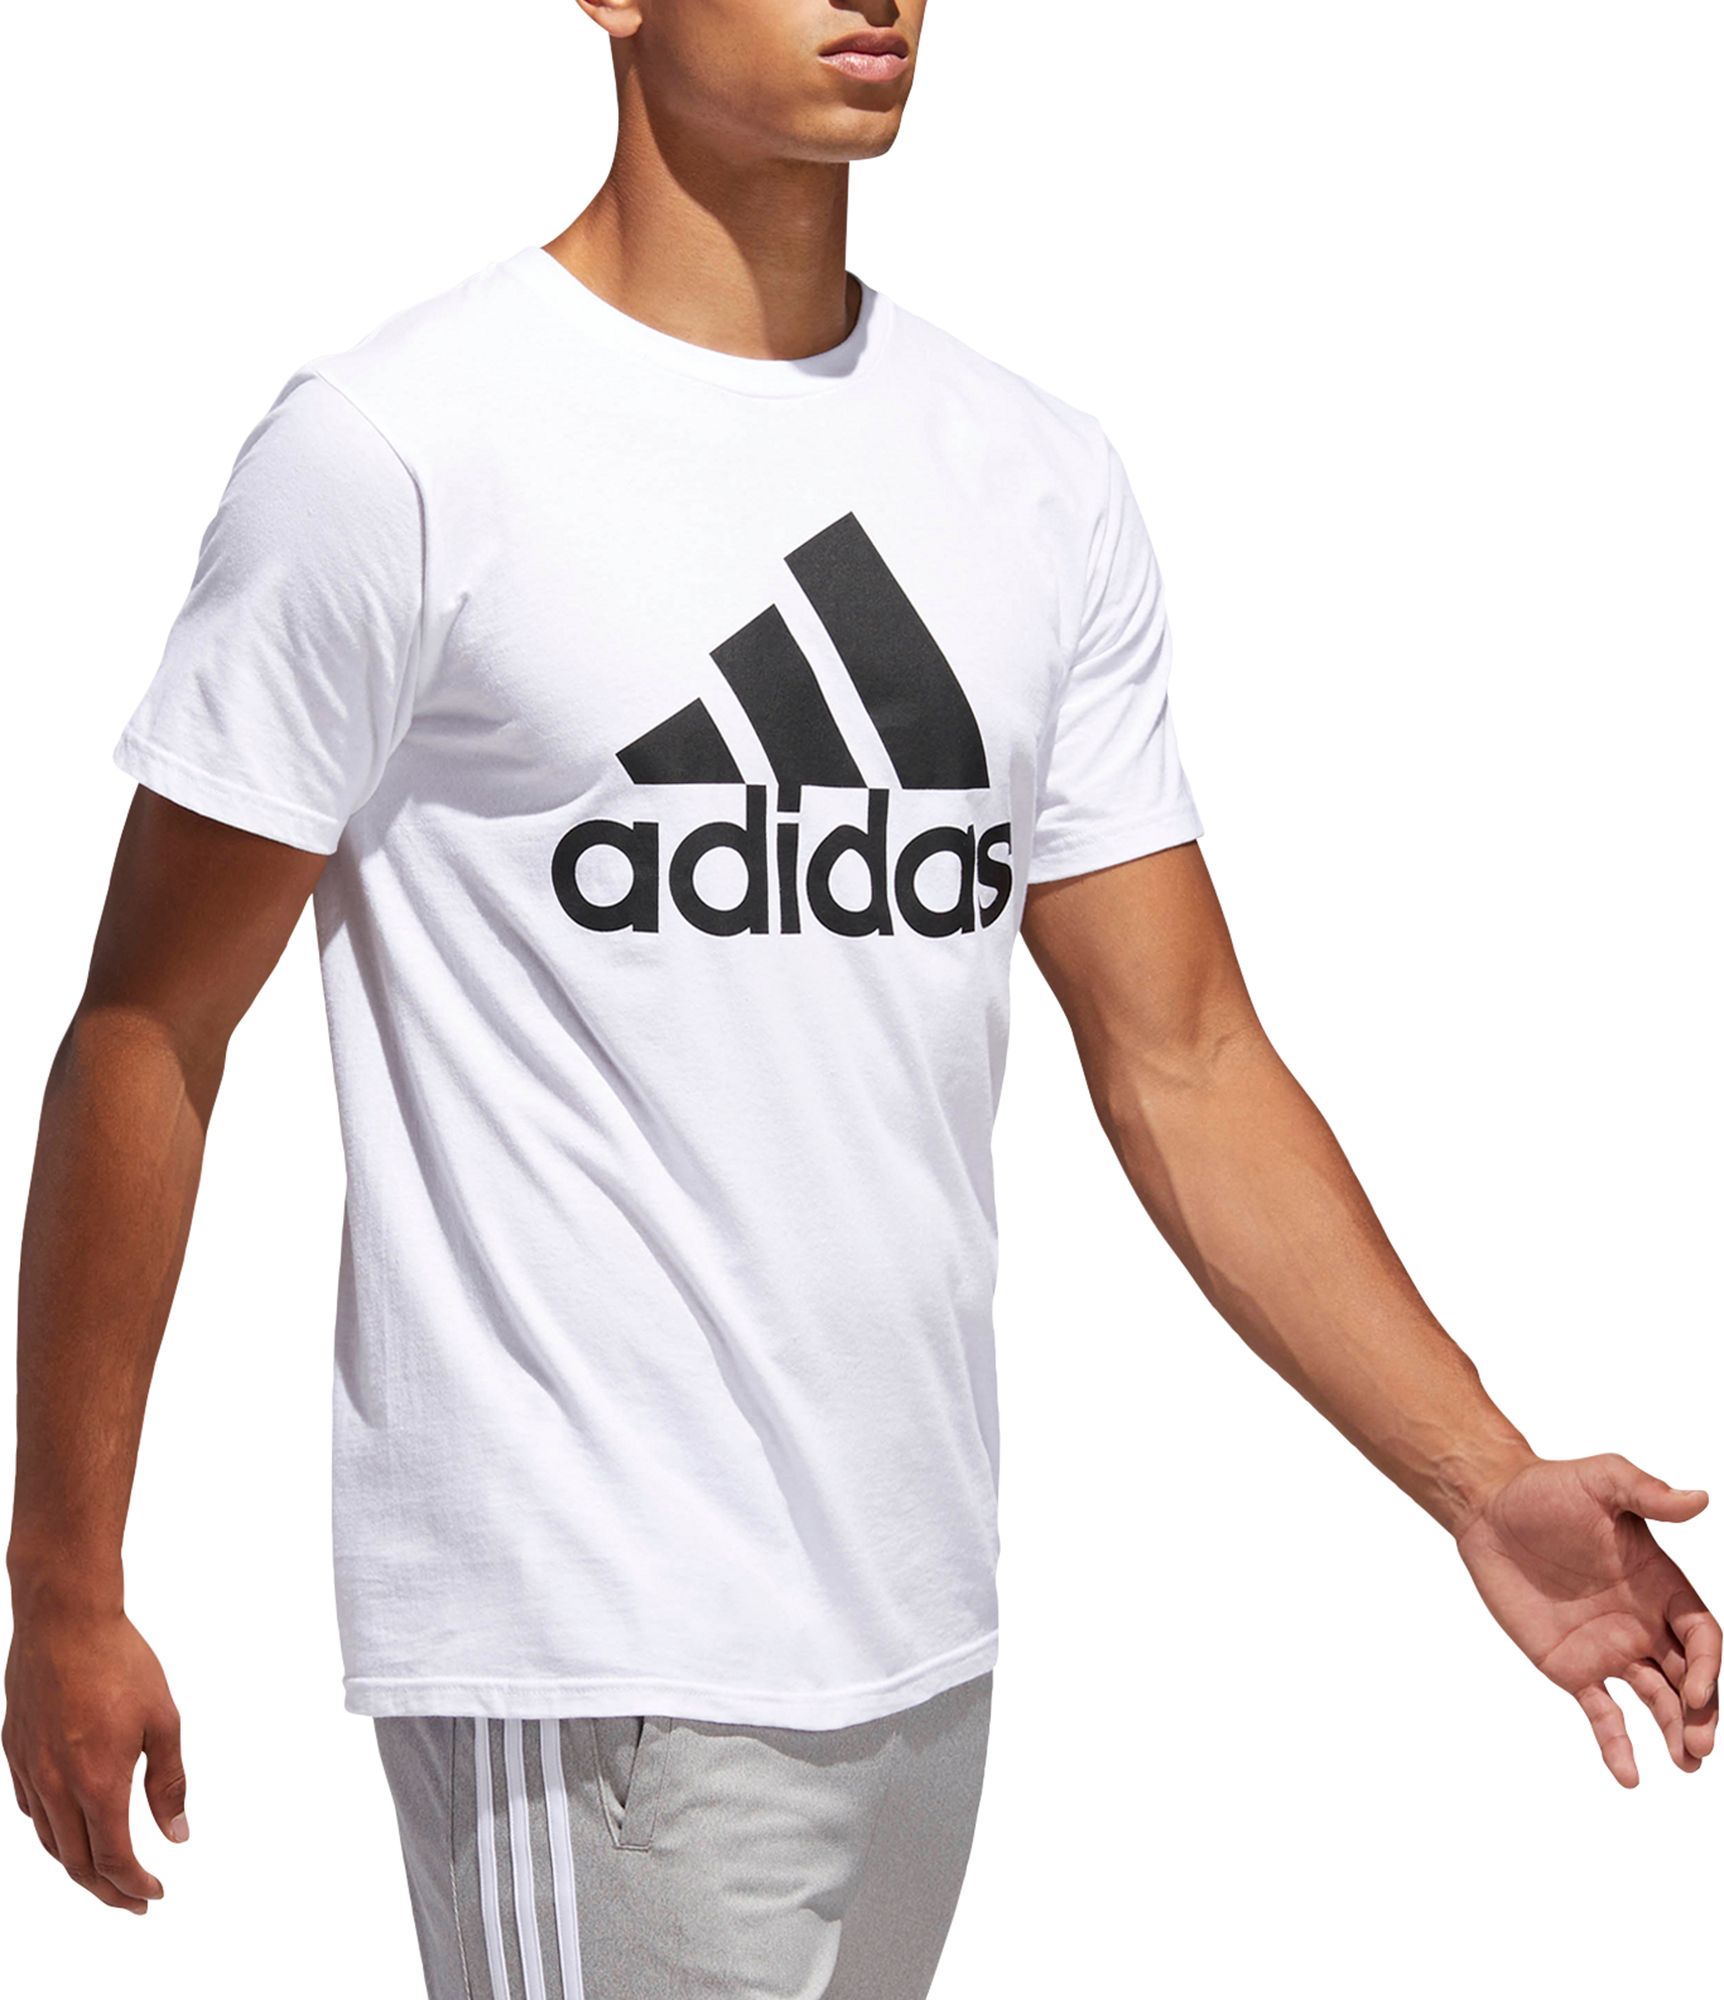 dicks adidas shirt